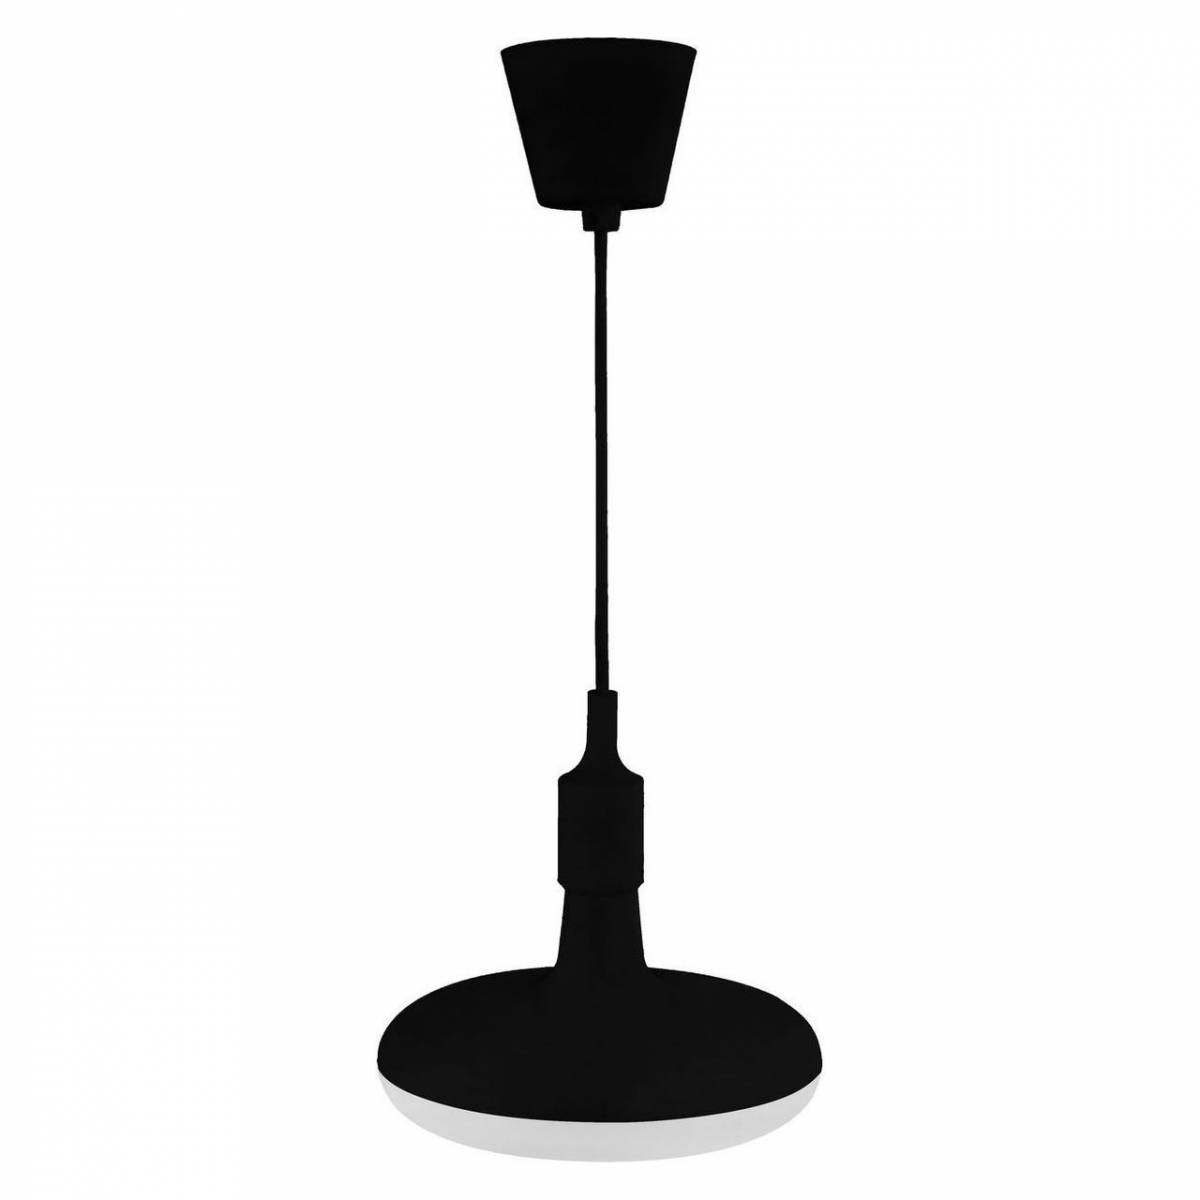 Подвесной светильник Horoz 020-006 020-006-0012 Светодиодный св-к подвесной 12W 4000К Черный